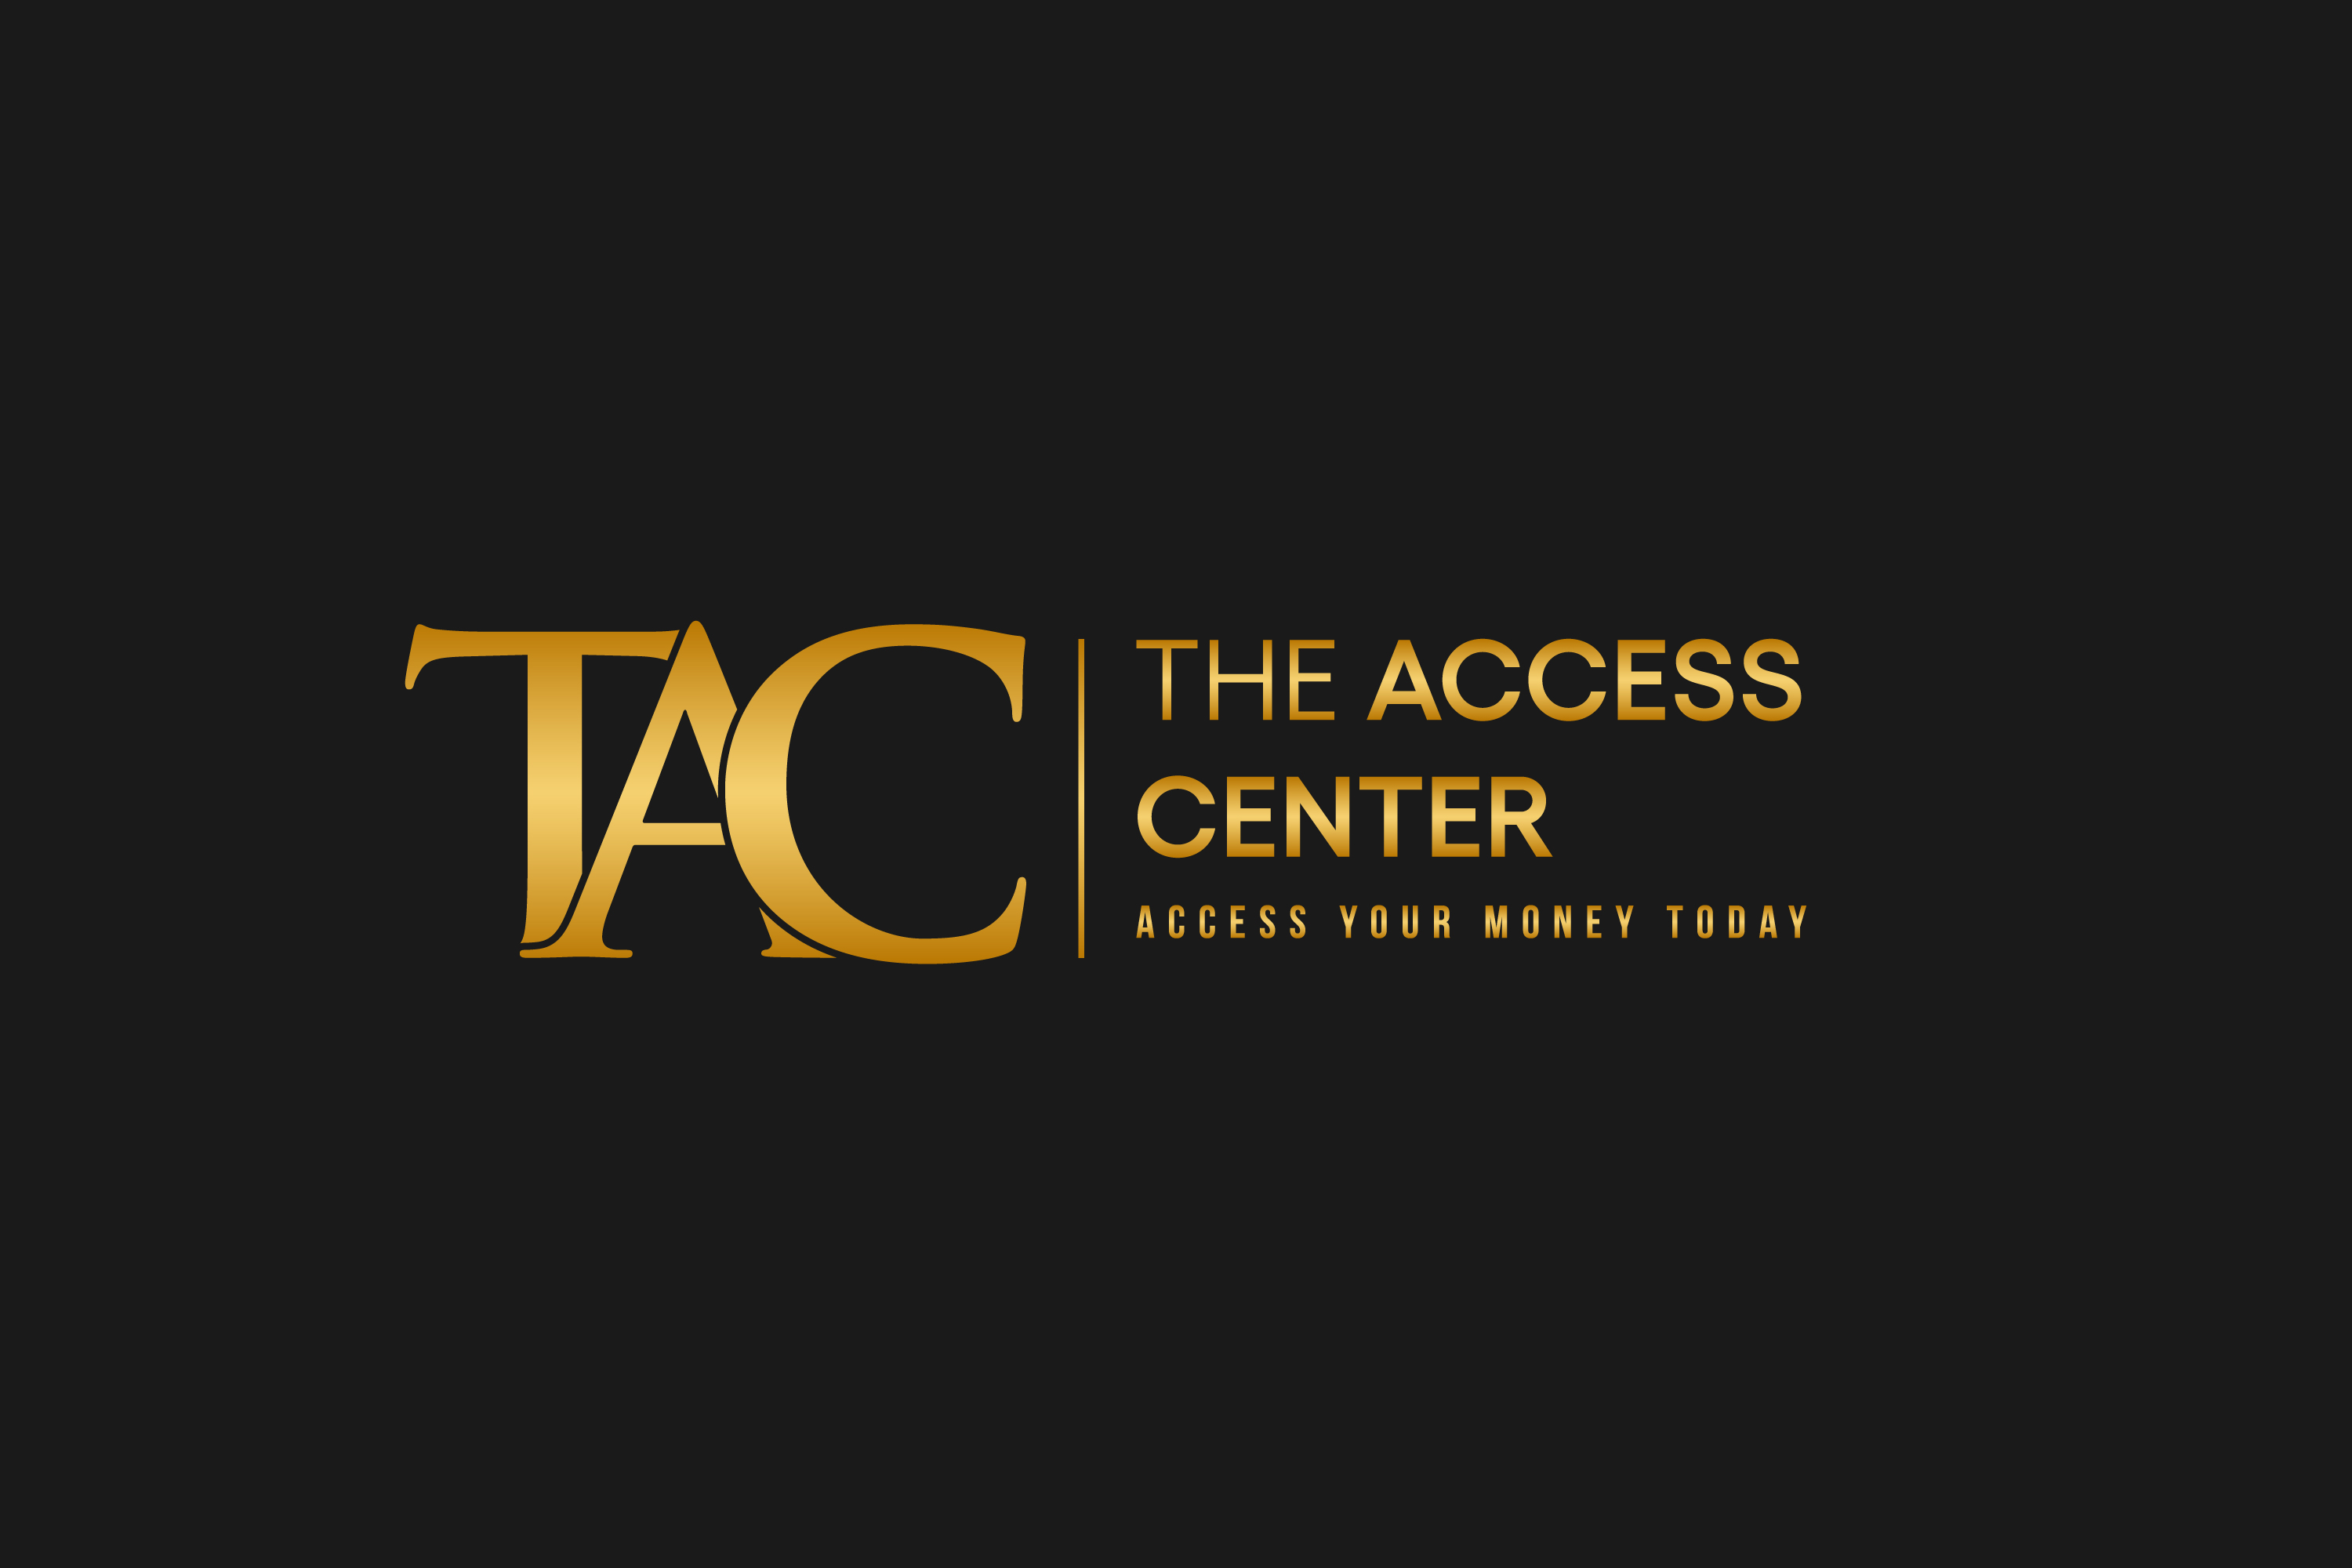 The Access Center